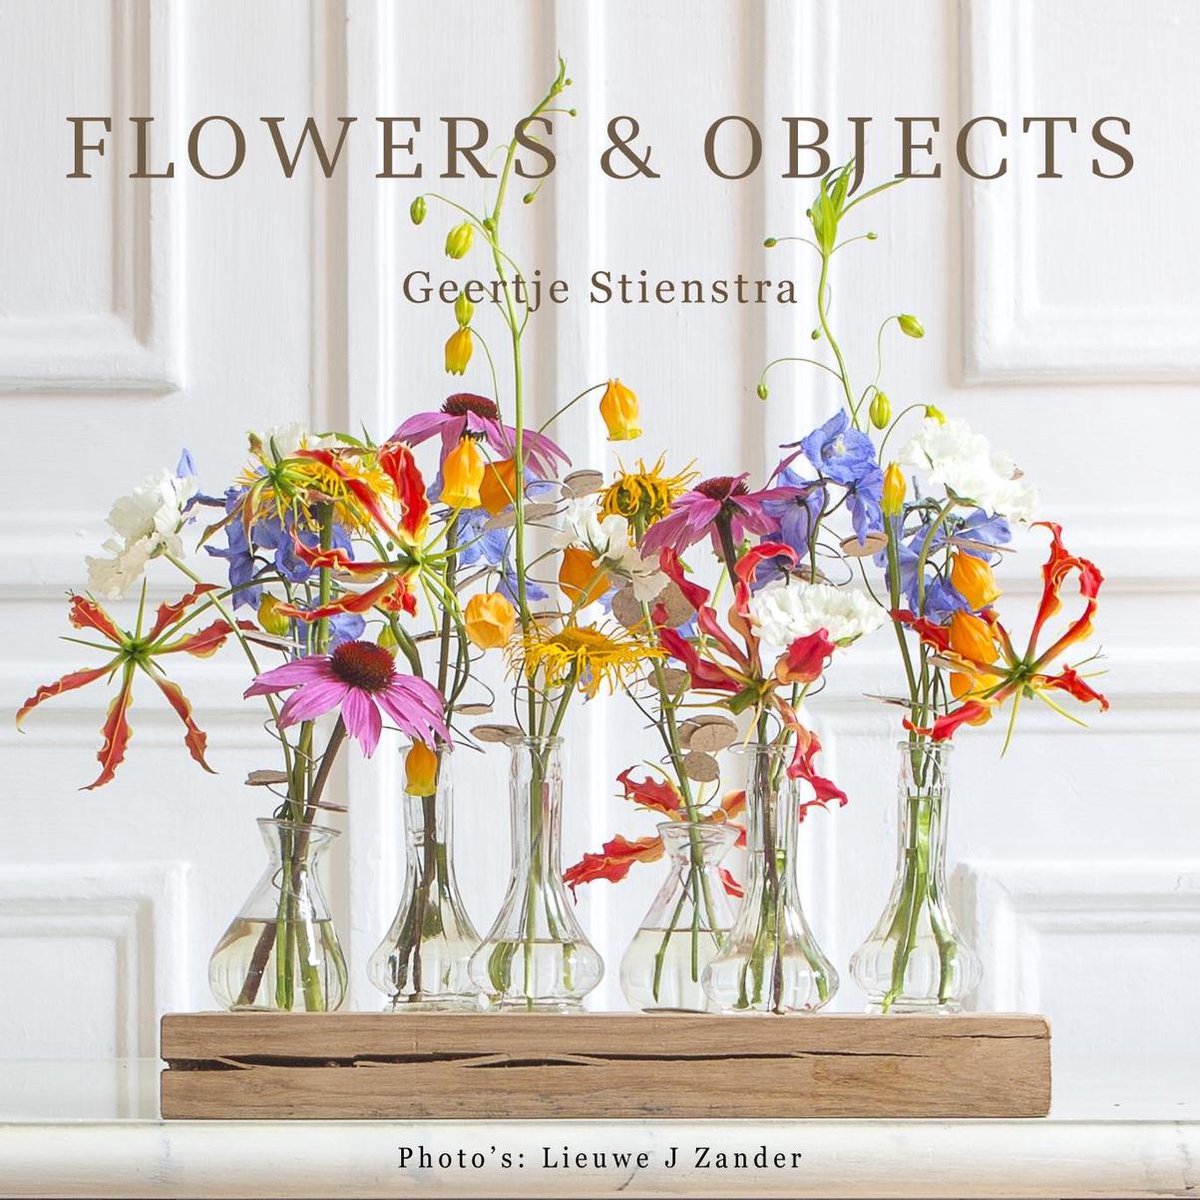 Flowers & Objects